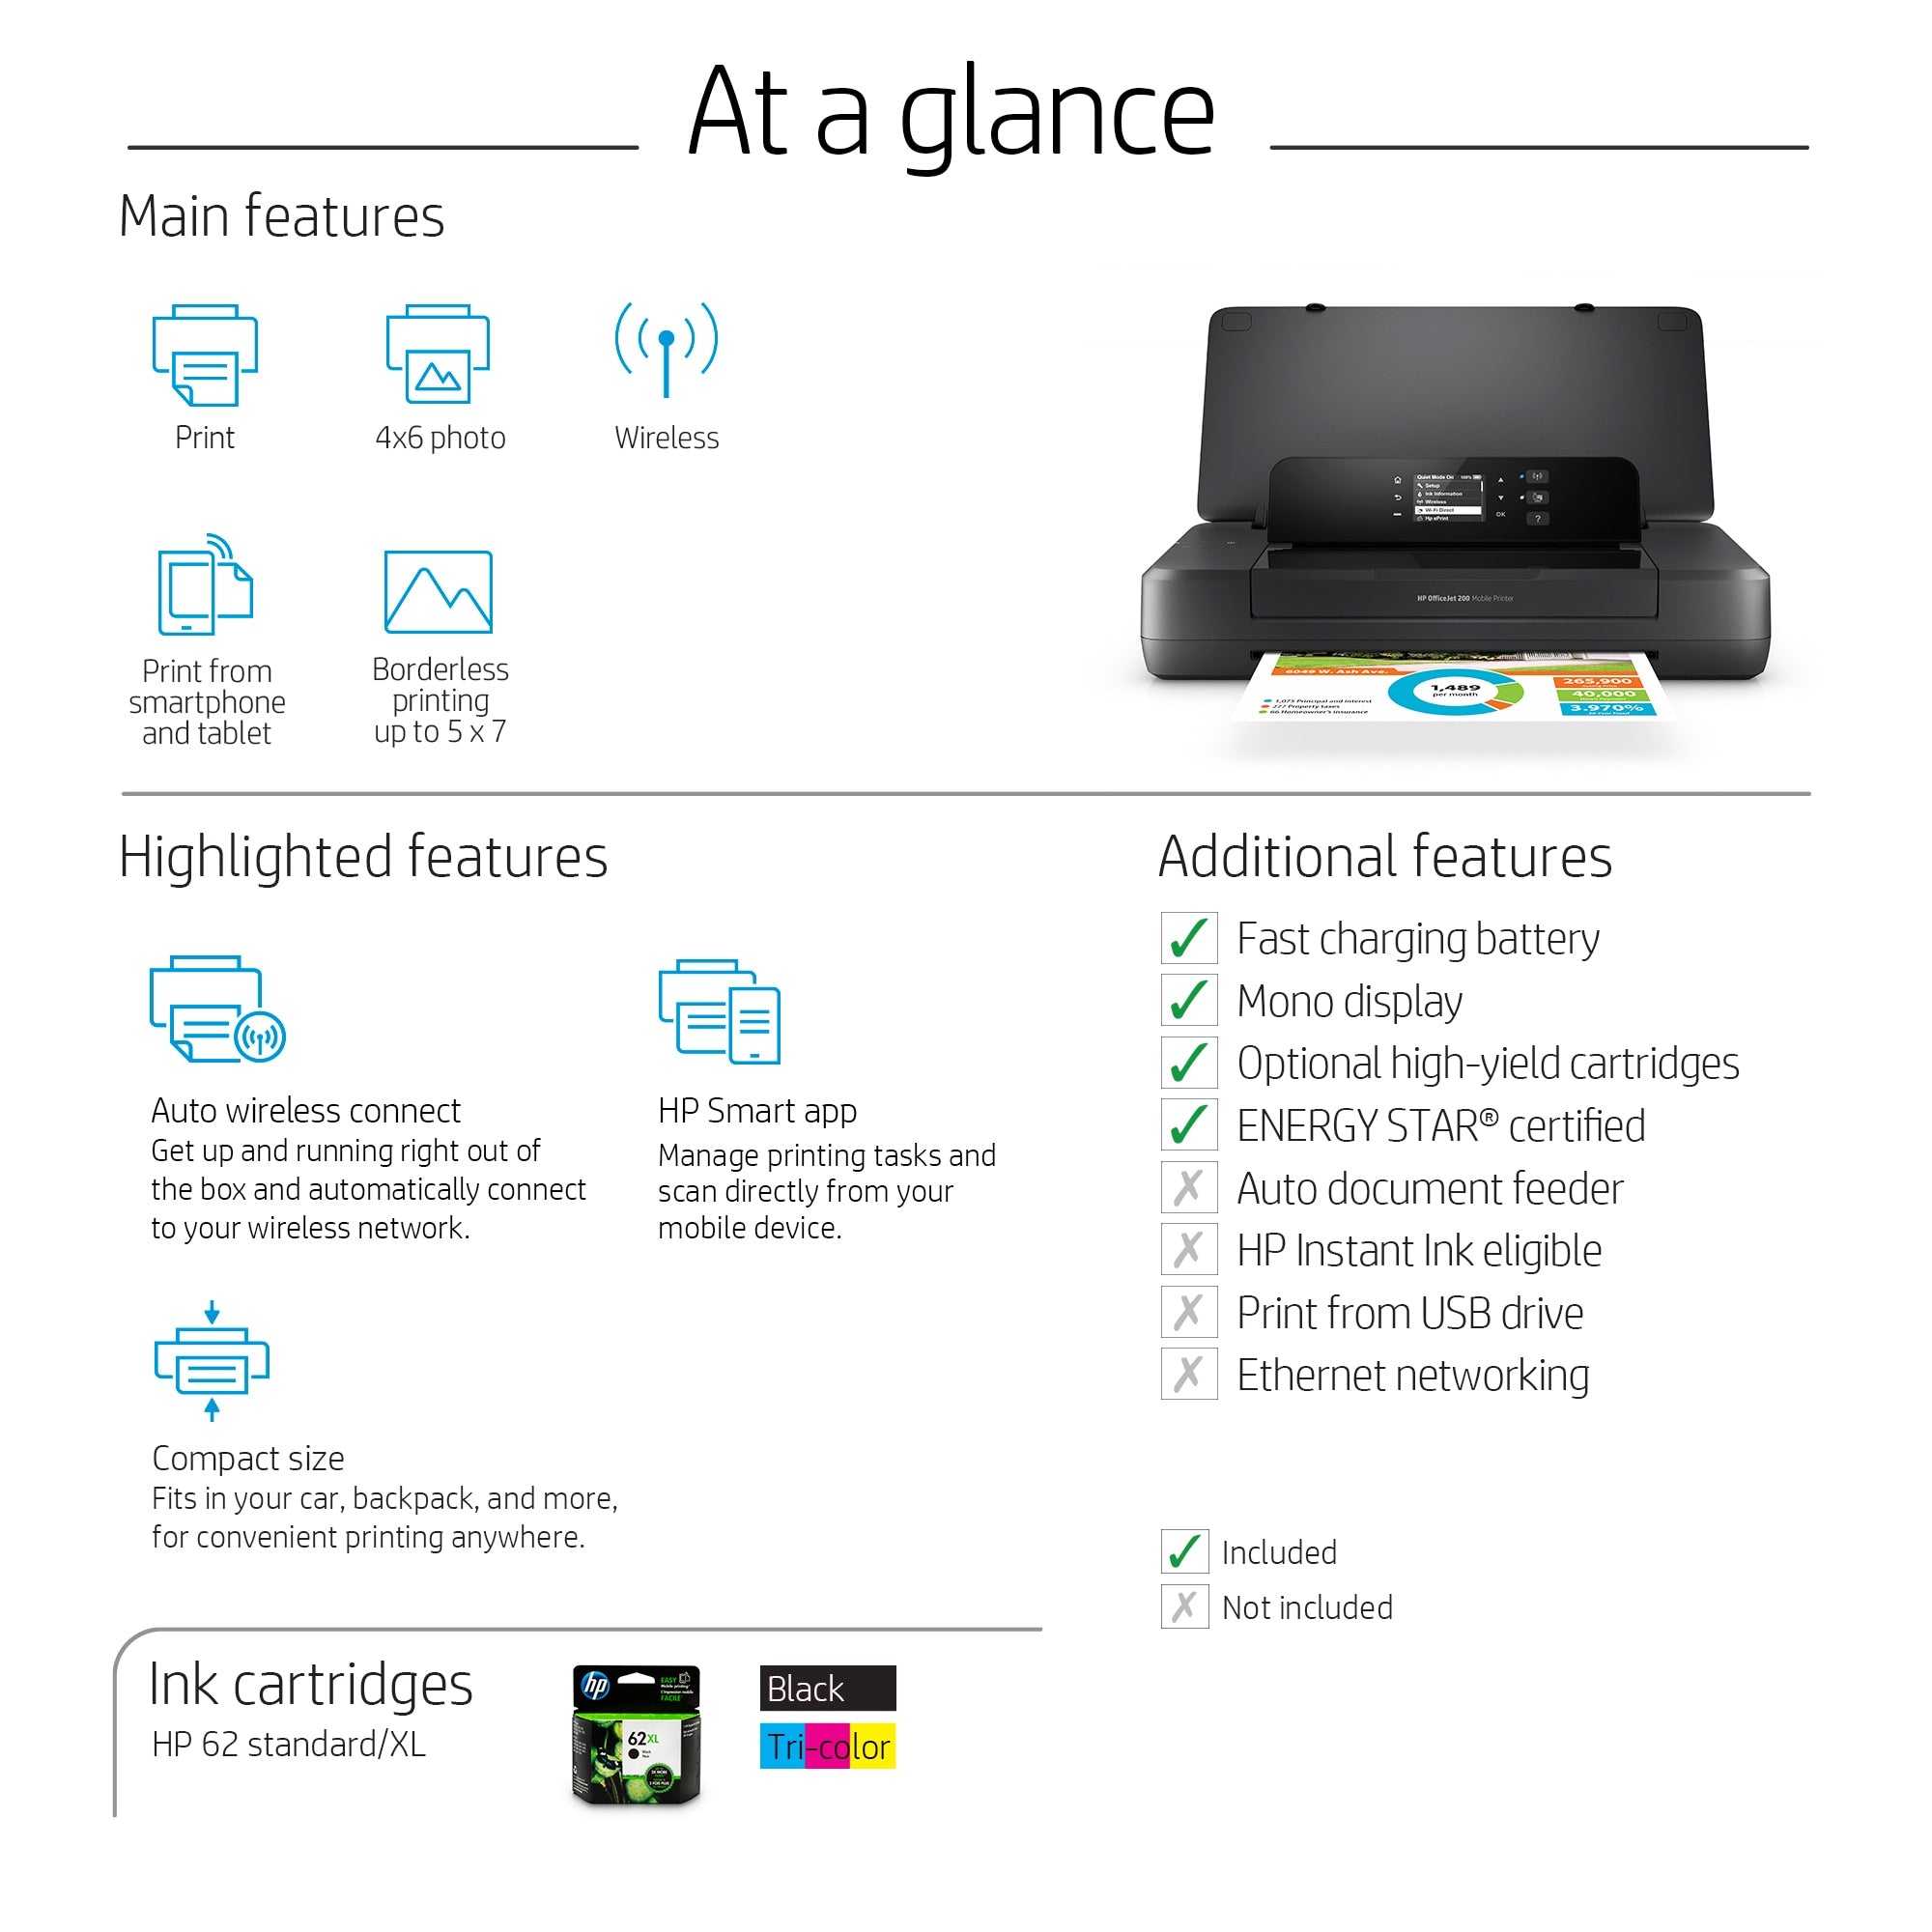 HP Officejet 200 mobile printer